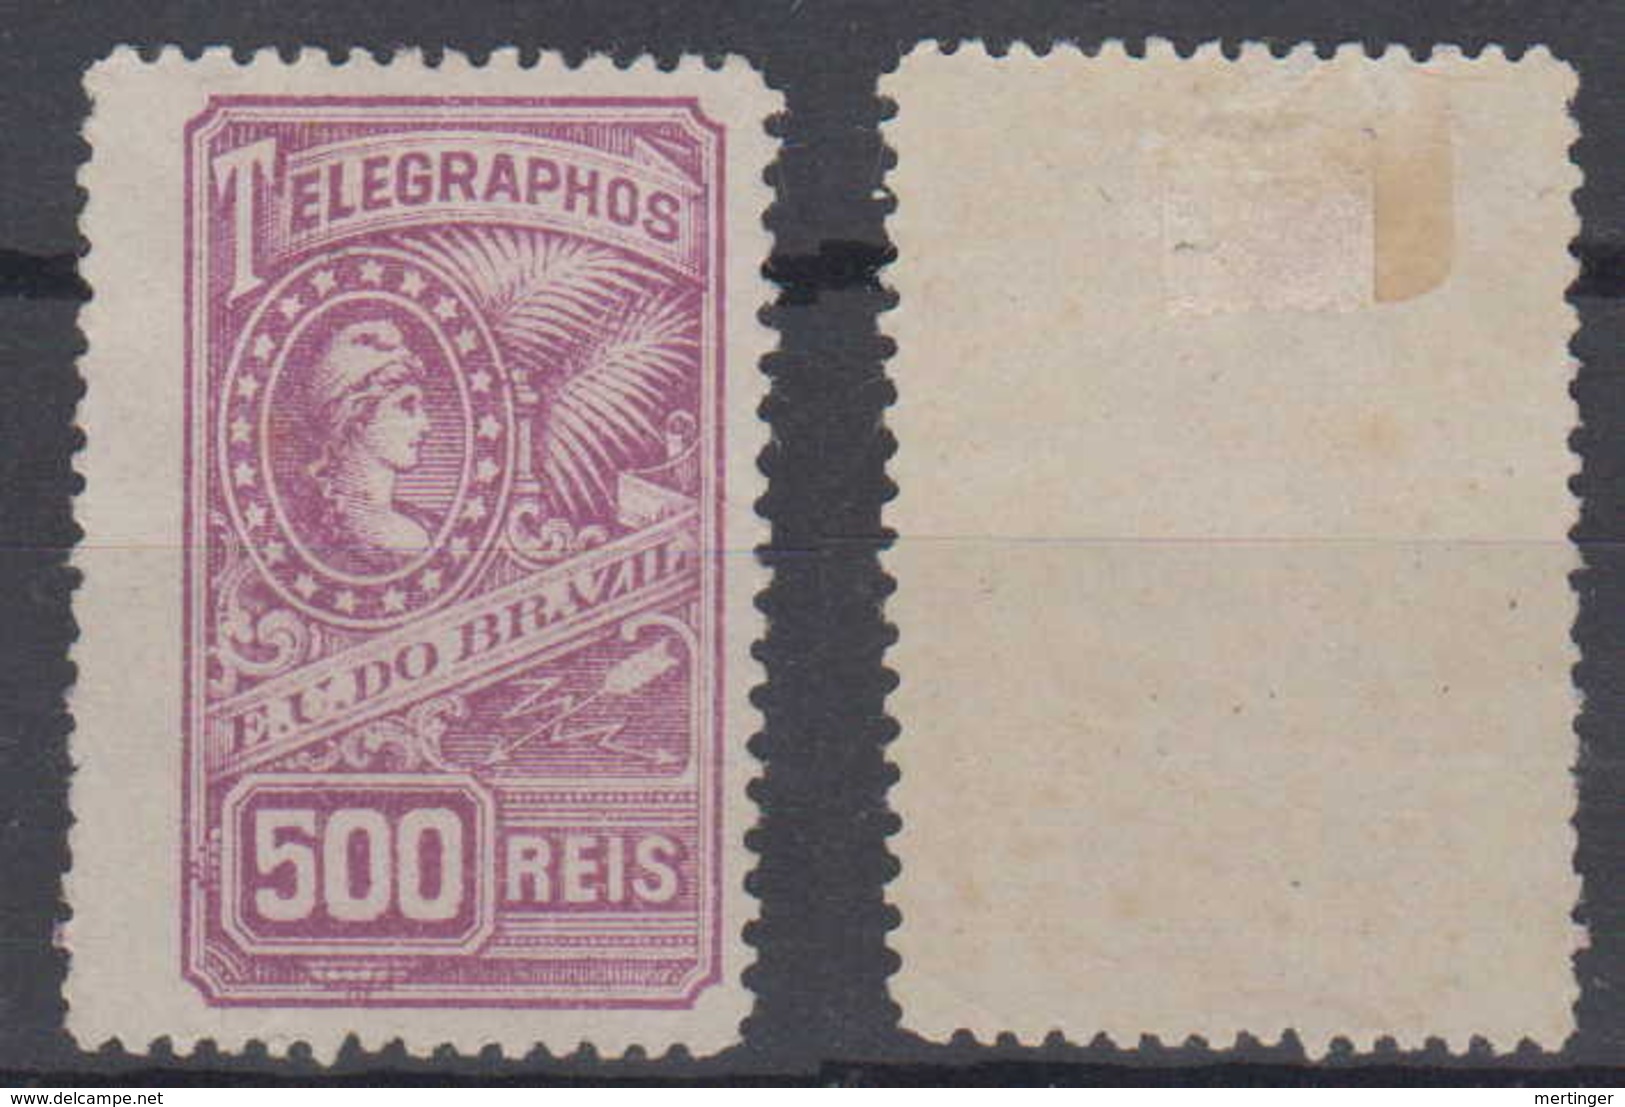 Brazil Brasil Telegrafo Telegraph 1899 500R * Mint - Telegraphenmarken